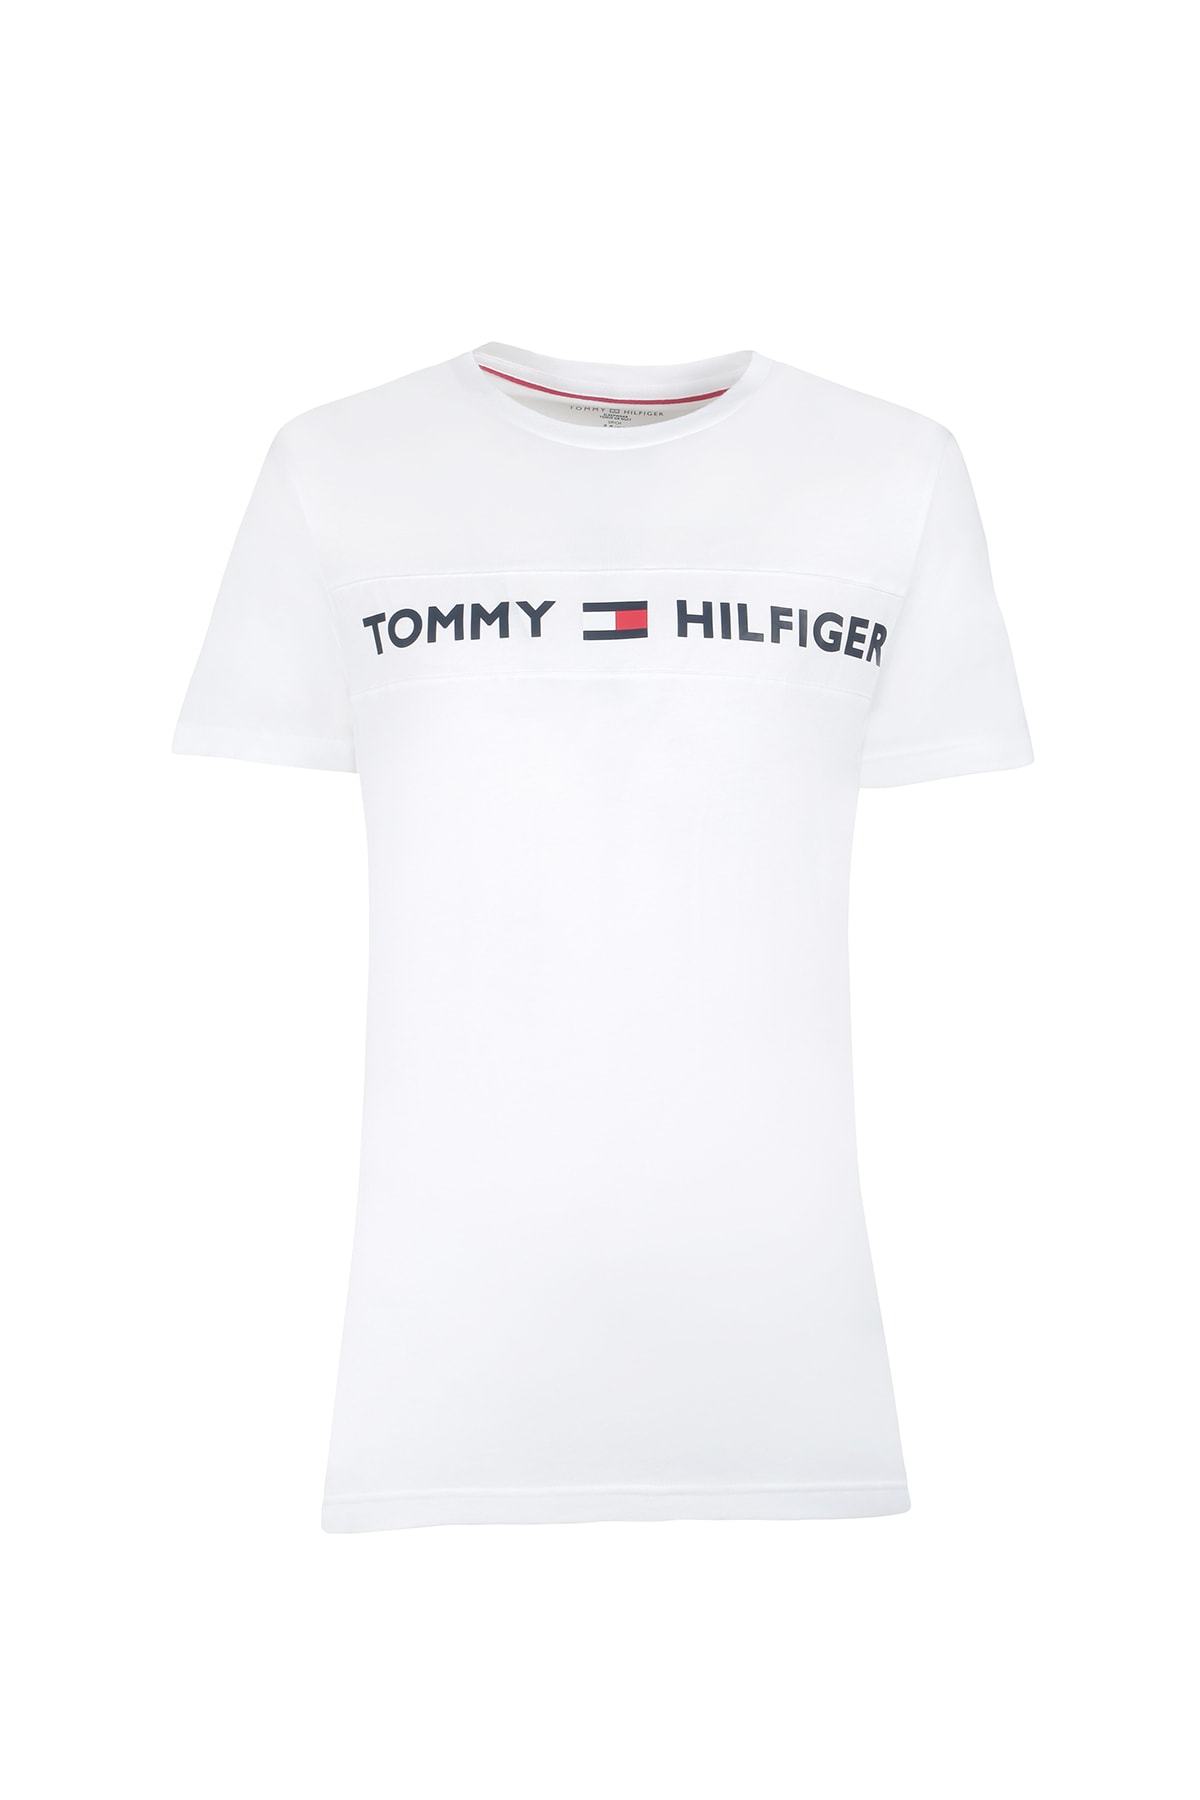 Tommy Hilfiger Erkek Beyaz T-shırt 09t3928-100